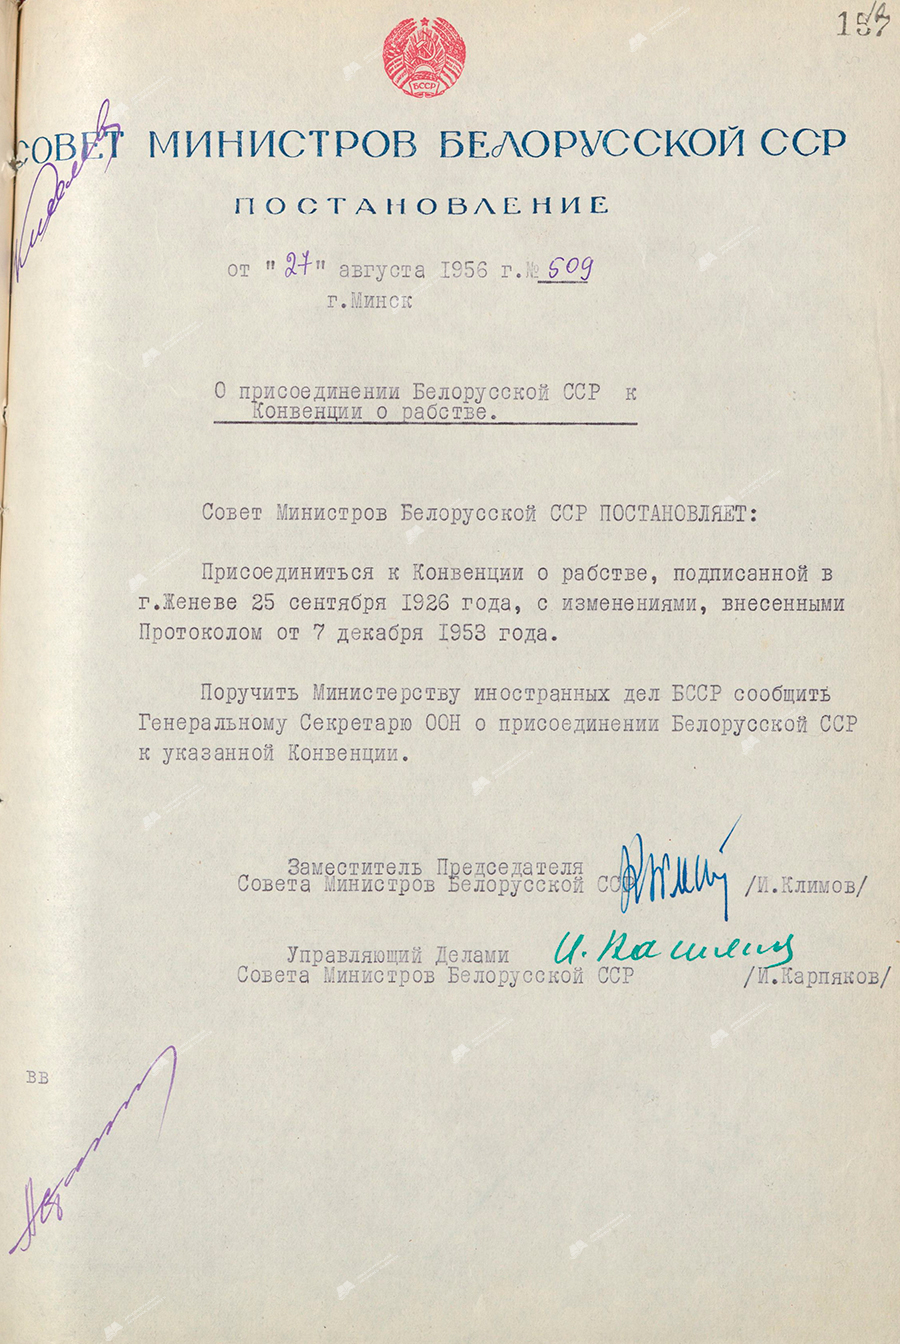 Beschluss Nr. 509 des Ministerrats der Weißrussischen SSR «Über den Beitritt der Weißrussischen SSR zum Sklavereiübereinkommen»-стр. 0